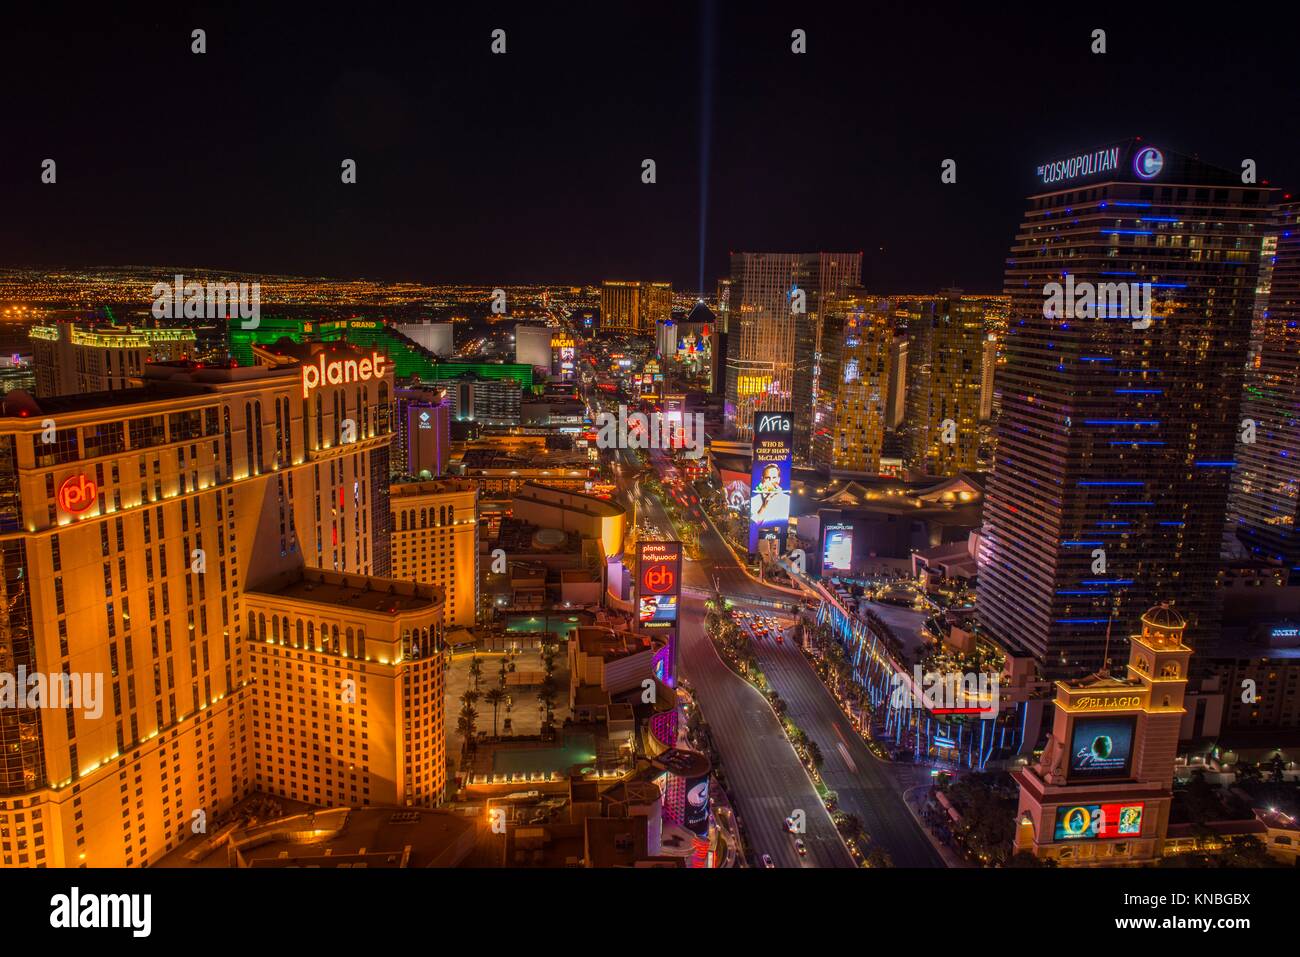 Las Vegas at night from the Paris Casino resort hotel Eiffel Tower- The Strip- Las Vegas Blvd, Las Vegas, Nevada, USA. Stock Photo